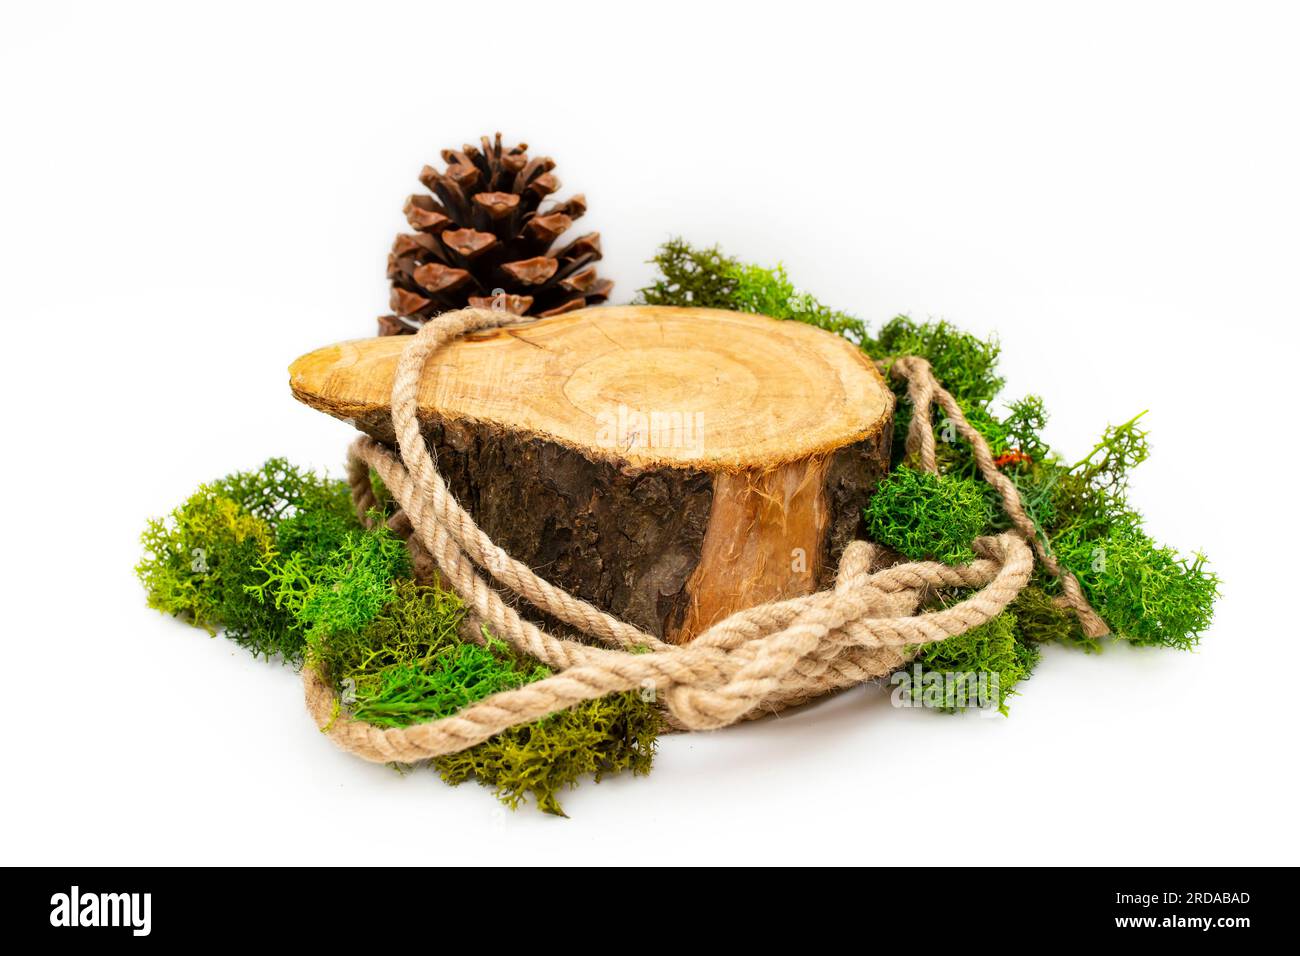 Sezione trasversale del tronco dell'albero con corda di iuta, lichene e cono di pino, impostazione per la visualizzazione del prodotto, isolata su sfondo bianco Foto Stock